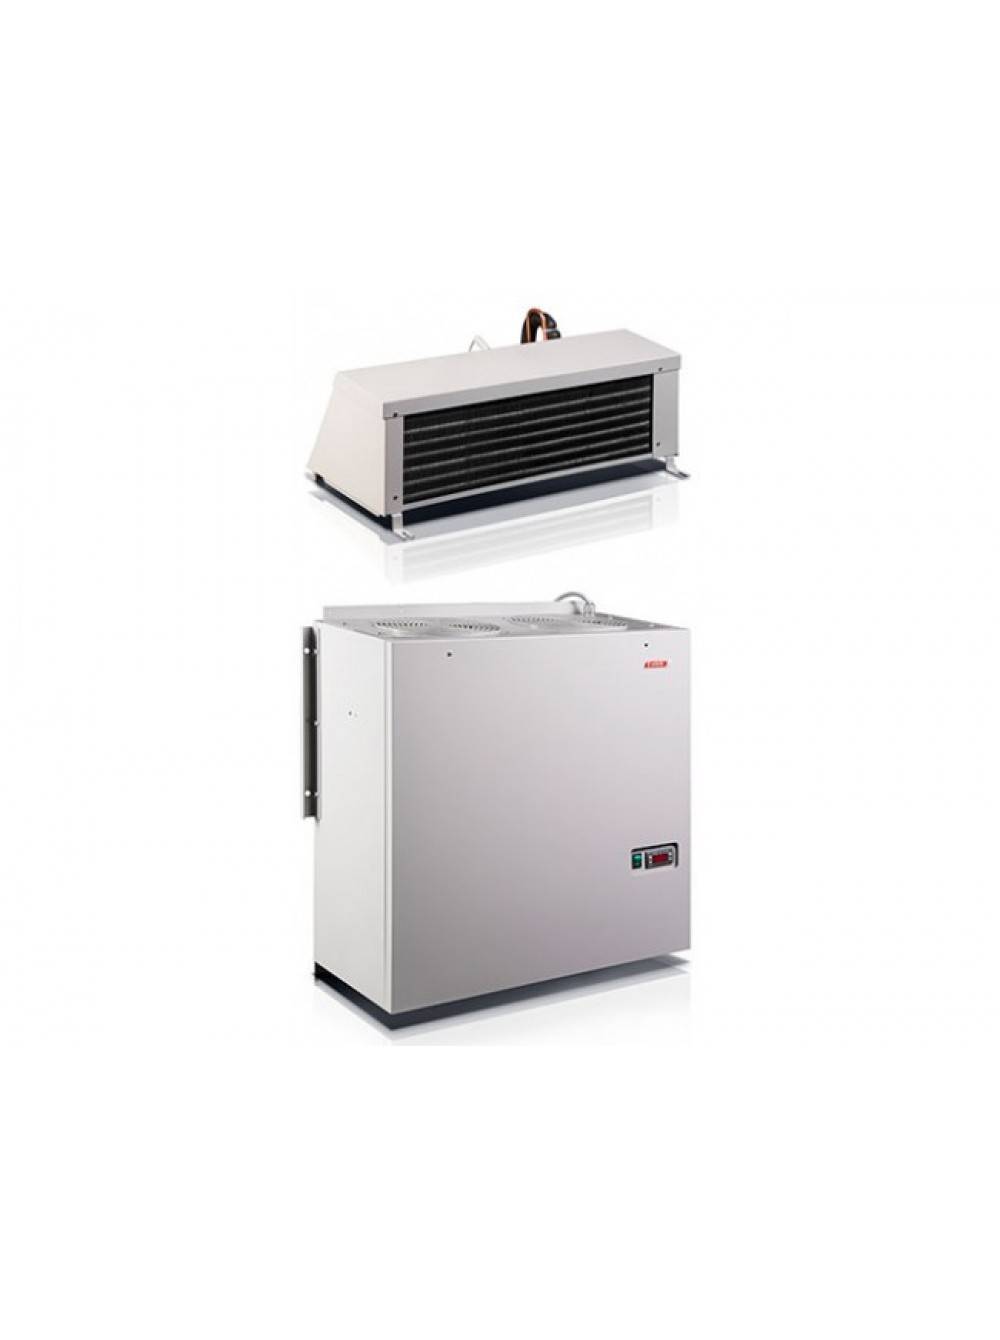 Обзор холодильных сплит-систем север: отзывы, инструкции, сравнение моделей mgs 103, 211, 218